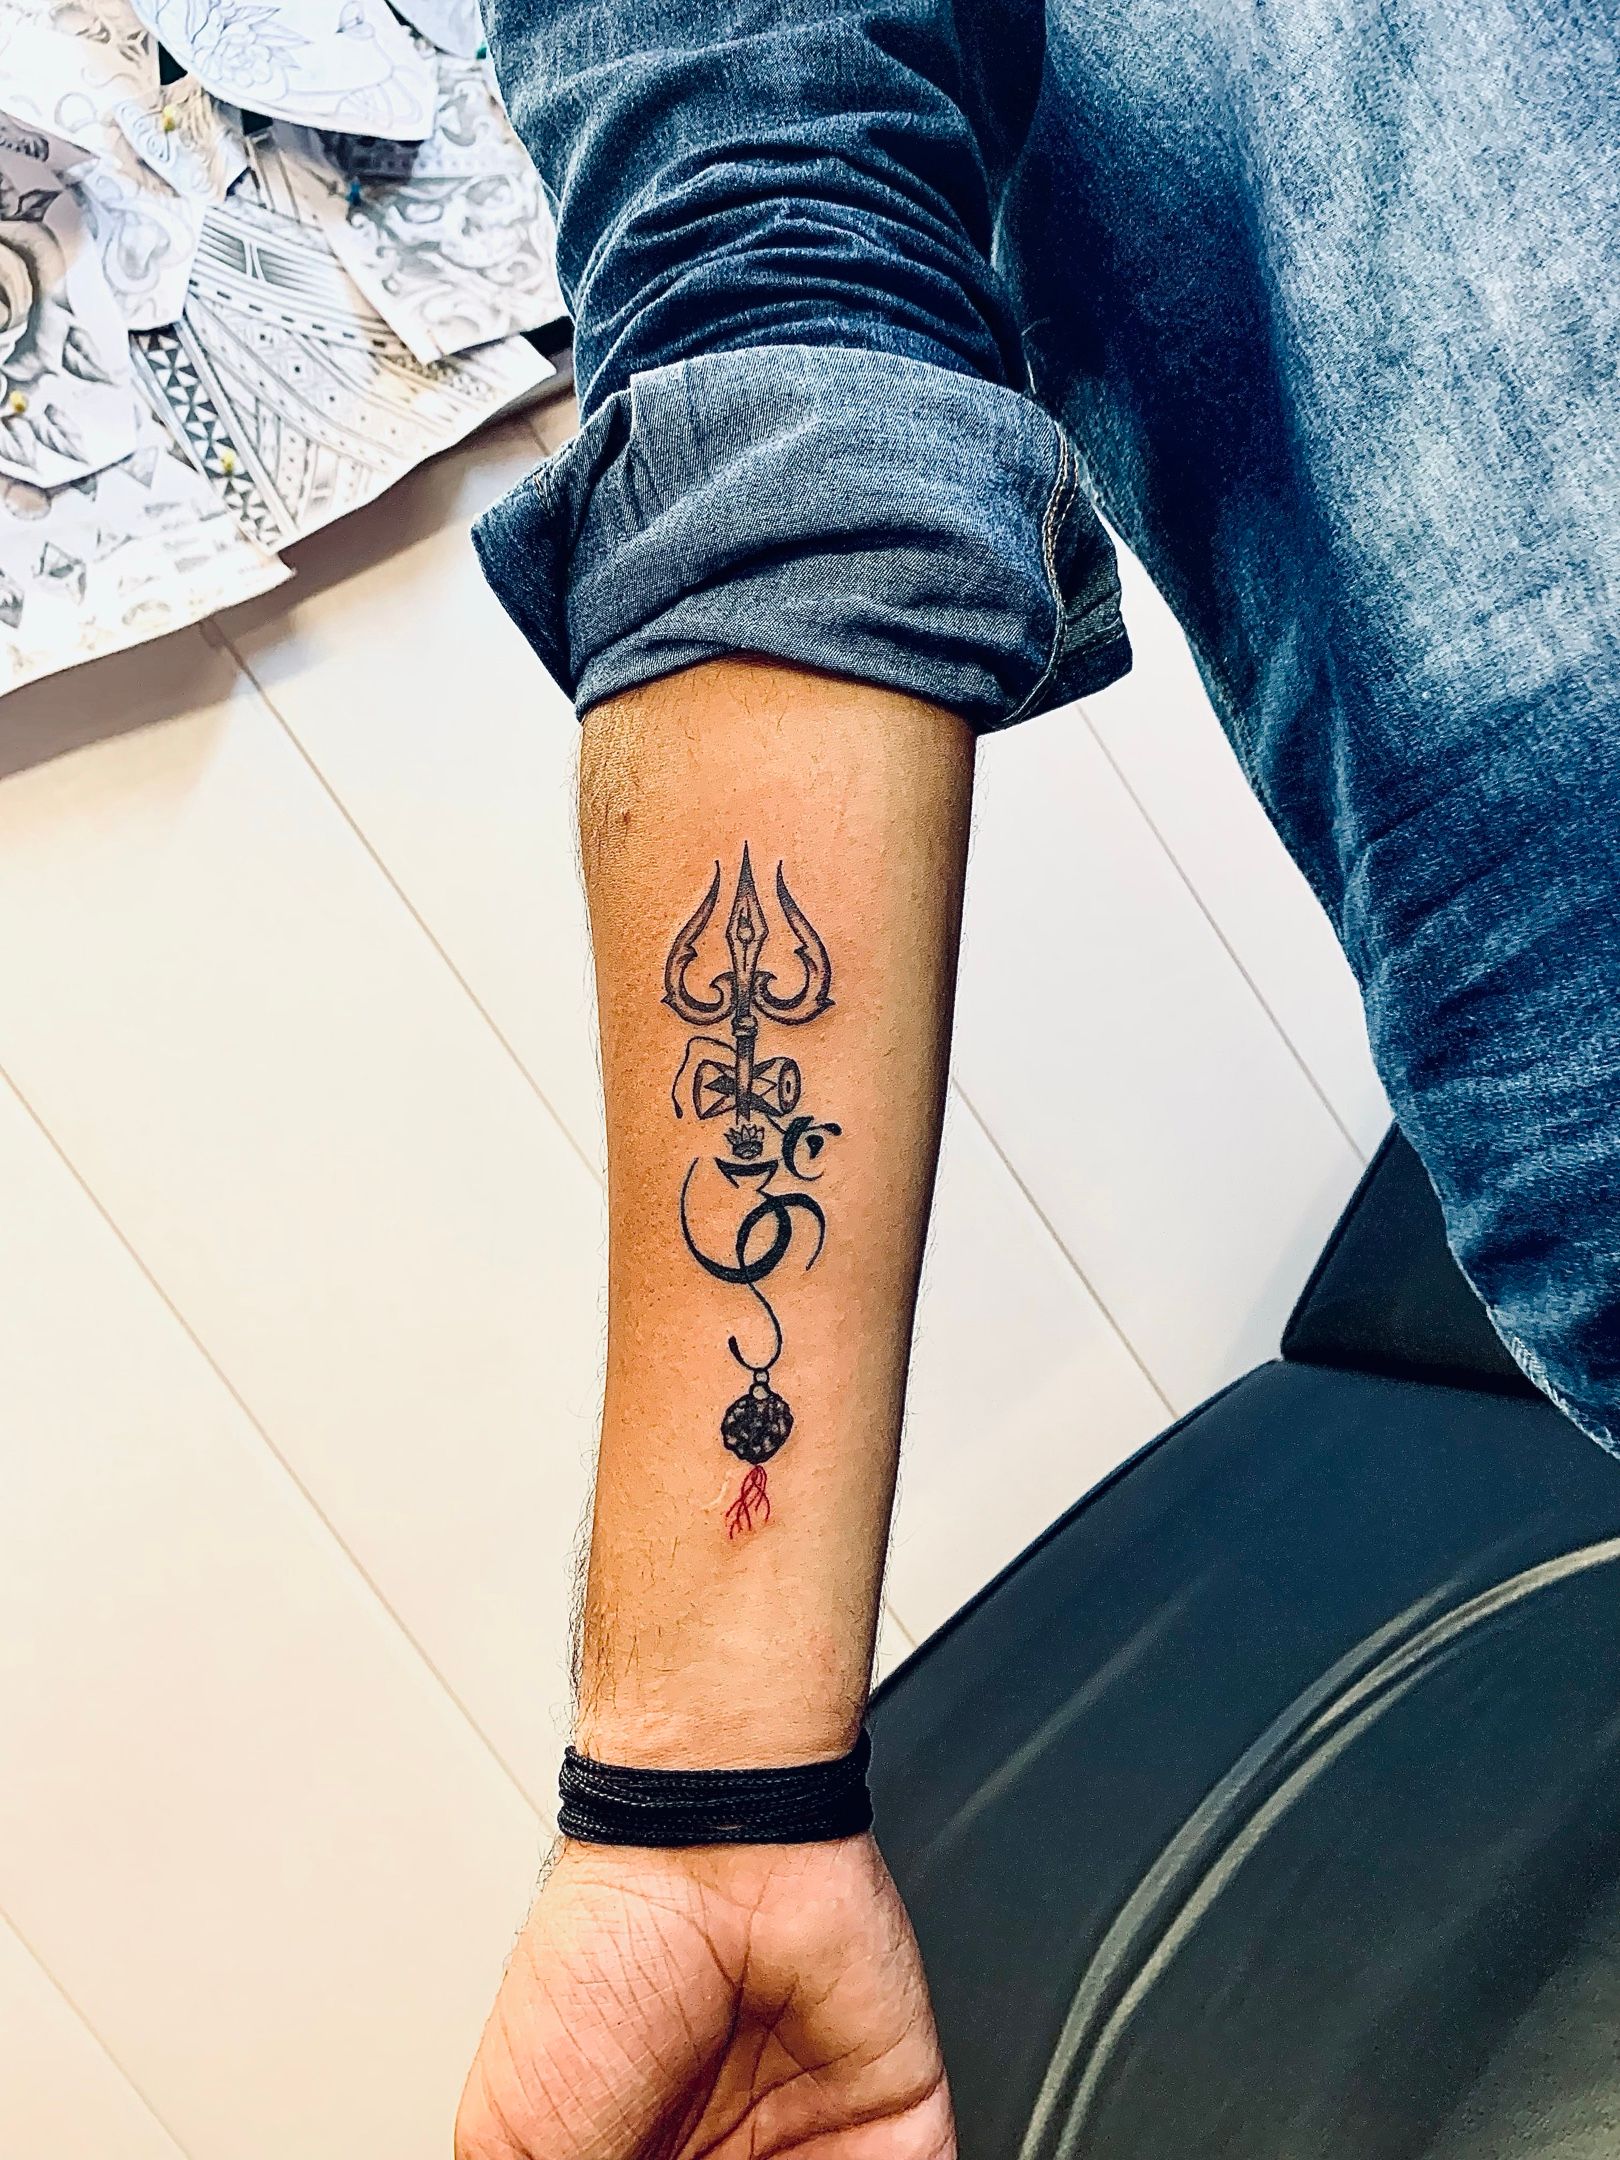 25+ Best Lord Shiva Tattoo Ideas with Images | Shiva tattoo, Trishul tattoo  designs, Forearm band tattoos